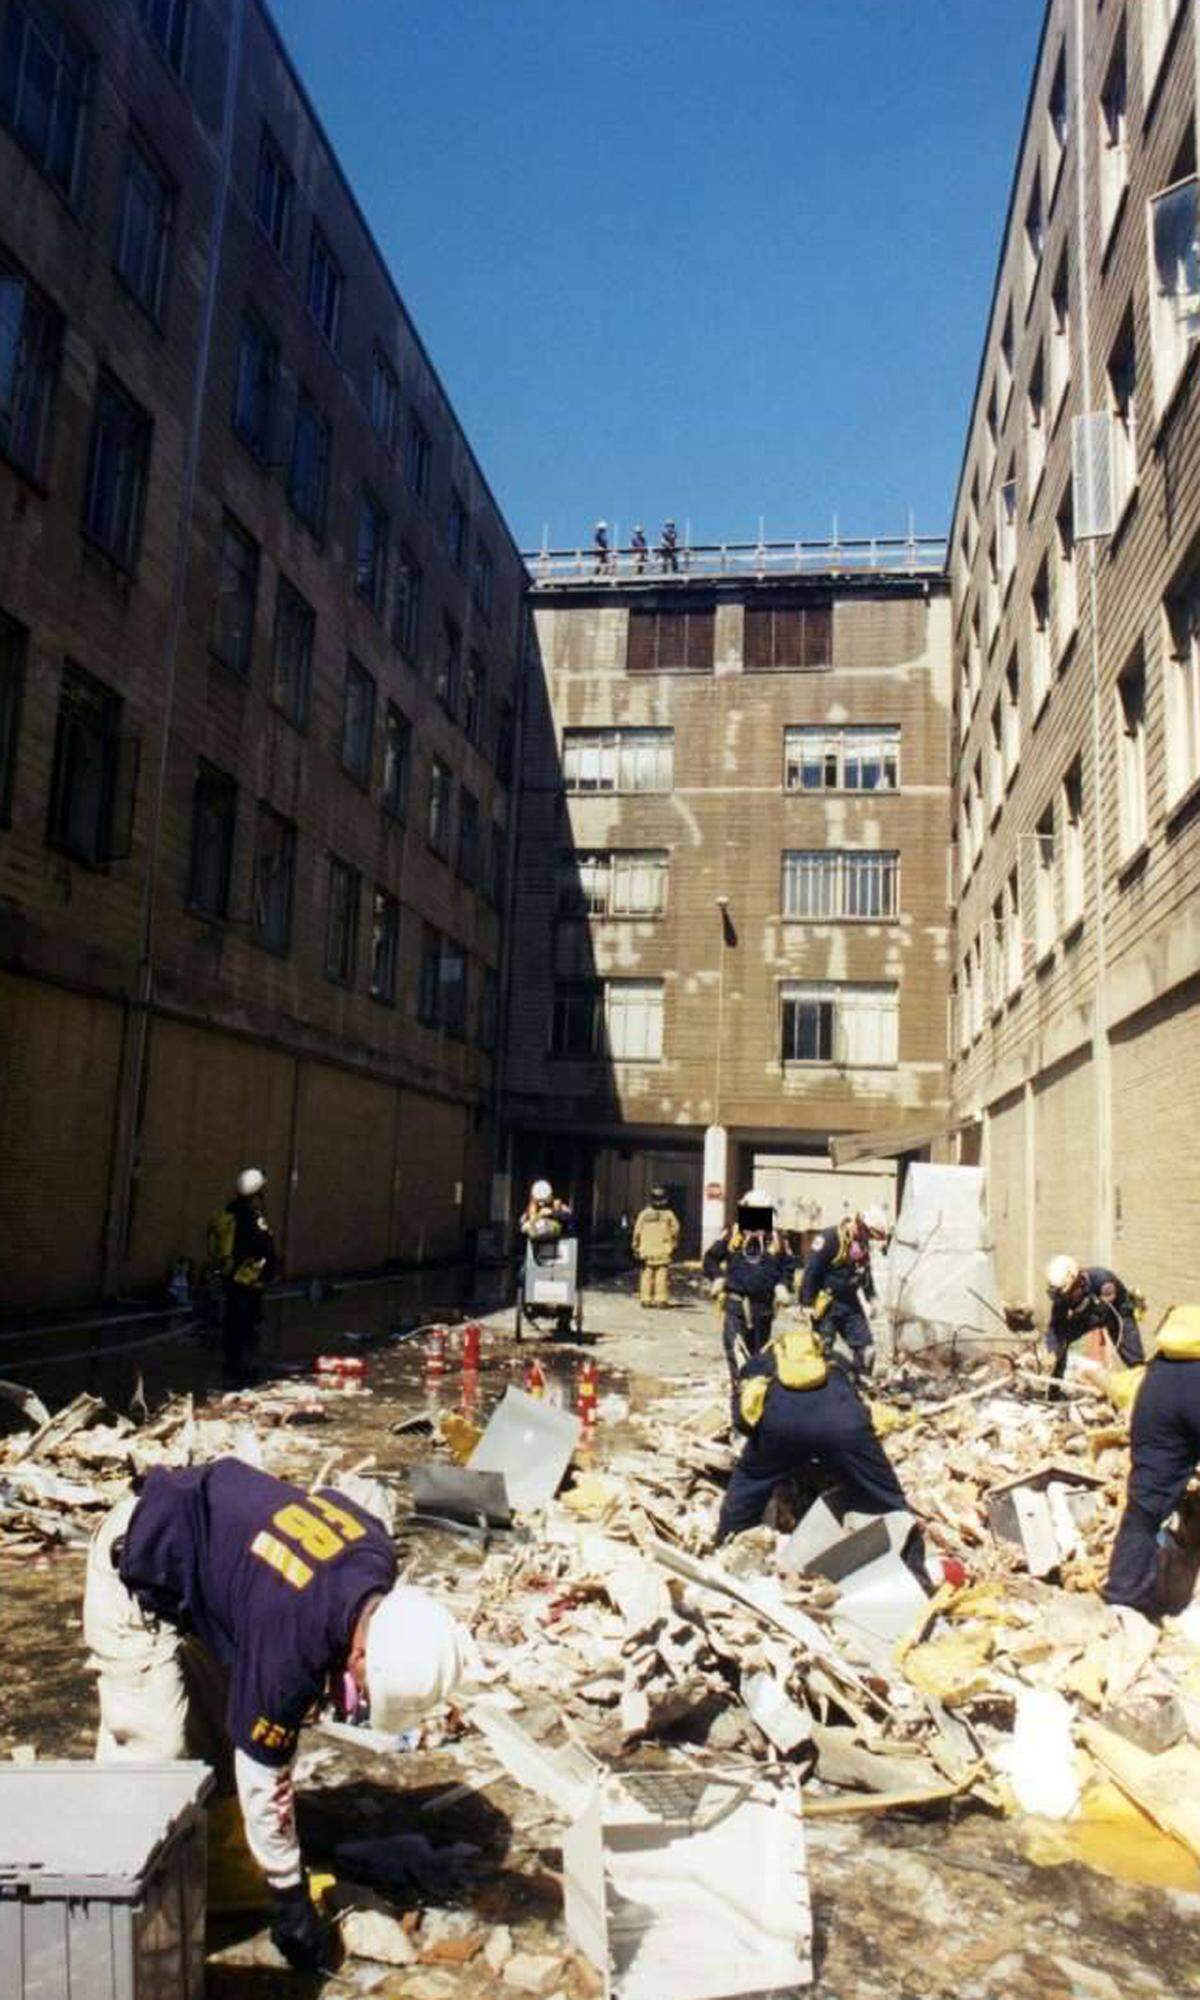 Mitglieder des Terrornetzwerks Al-Kaida hatten am 11. September 2001 Passagierflugzeuge entführt und in die Zwillingstürme des World Trade Center in New York sowie in das Verteidigungsministerium bei Washington gesteuert.